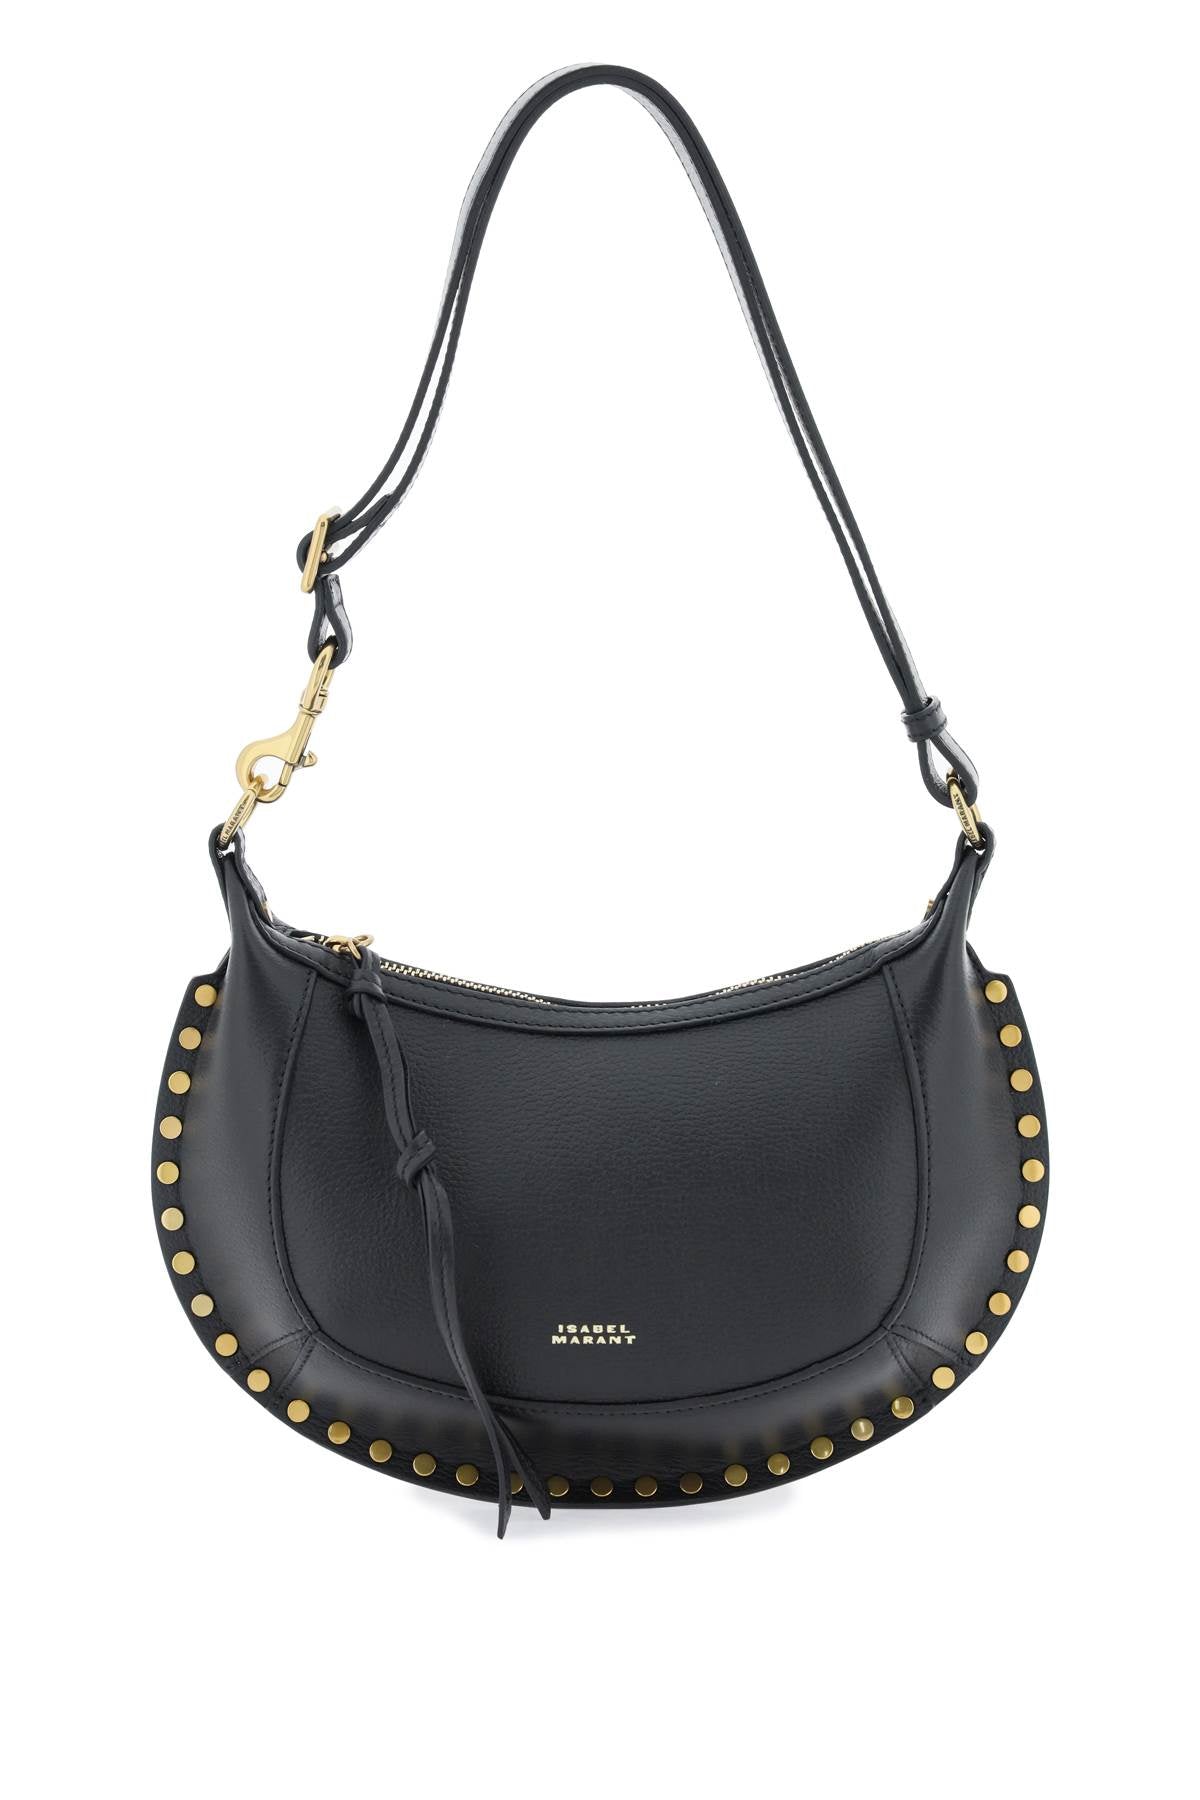 Isabel Marant Stylish Black Leather Shoulder Bag For Women